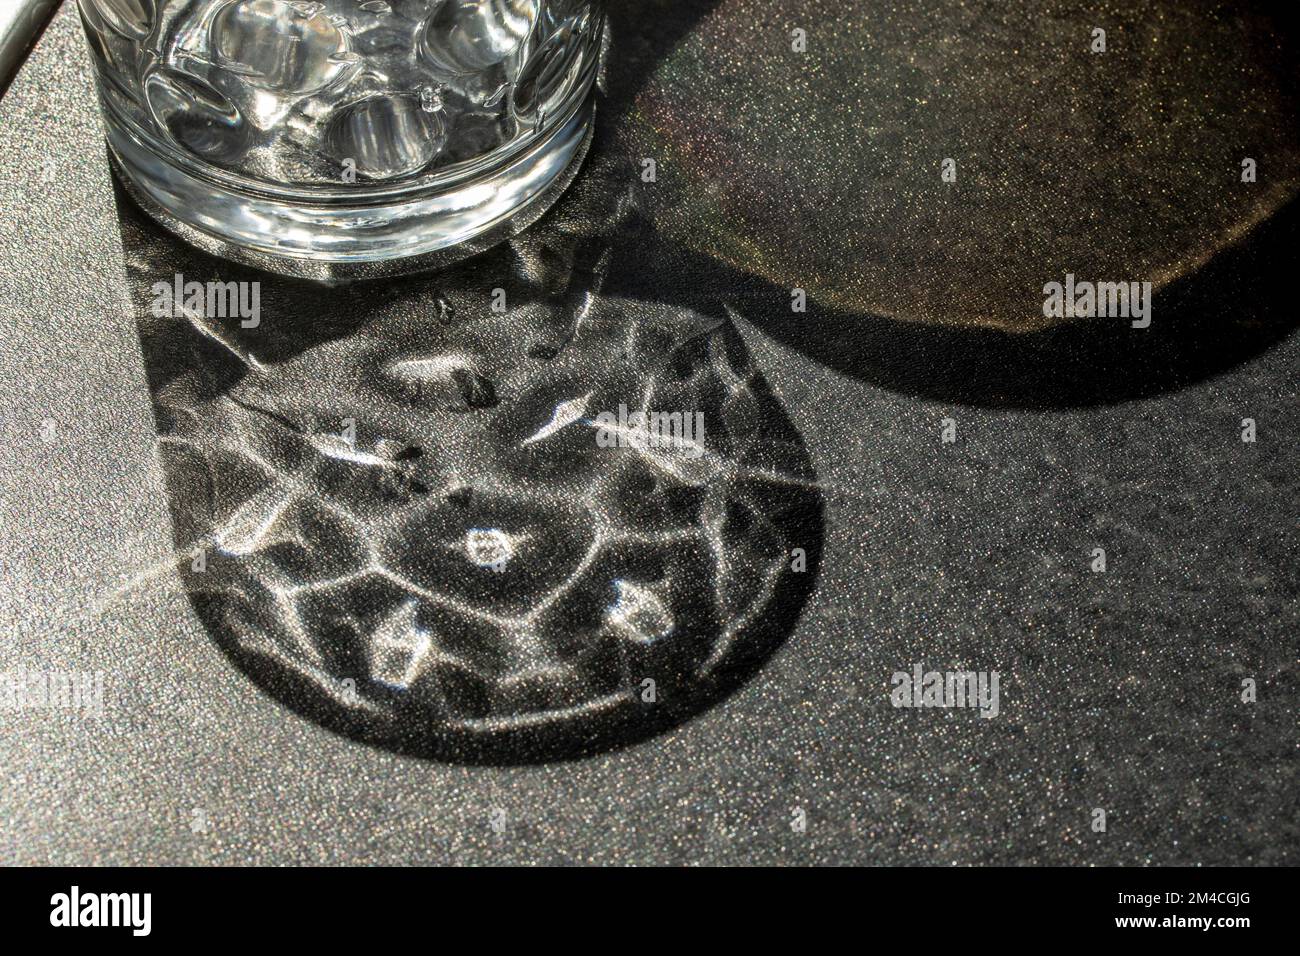 Natürliche Nahaufnahmen von Stillebenen, die durch Kristallglas auf einer Arbeitsfläche entstehen Stockfoto